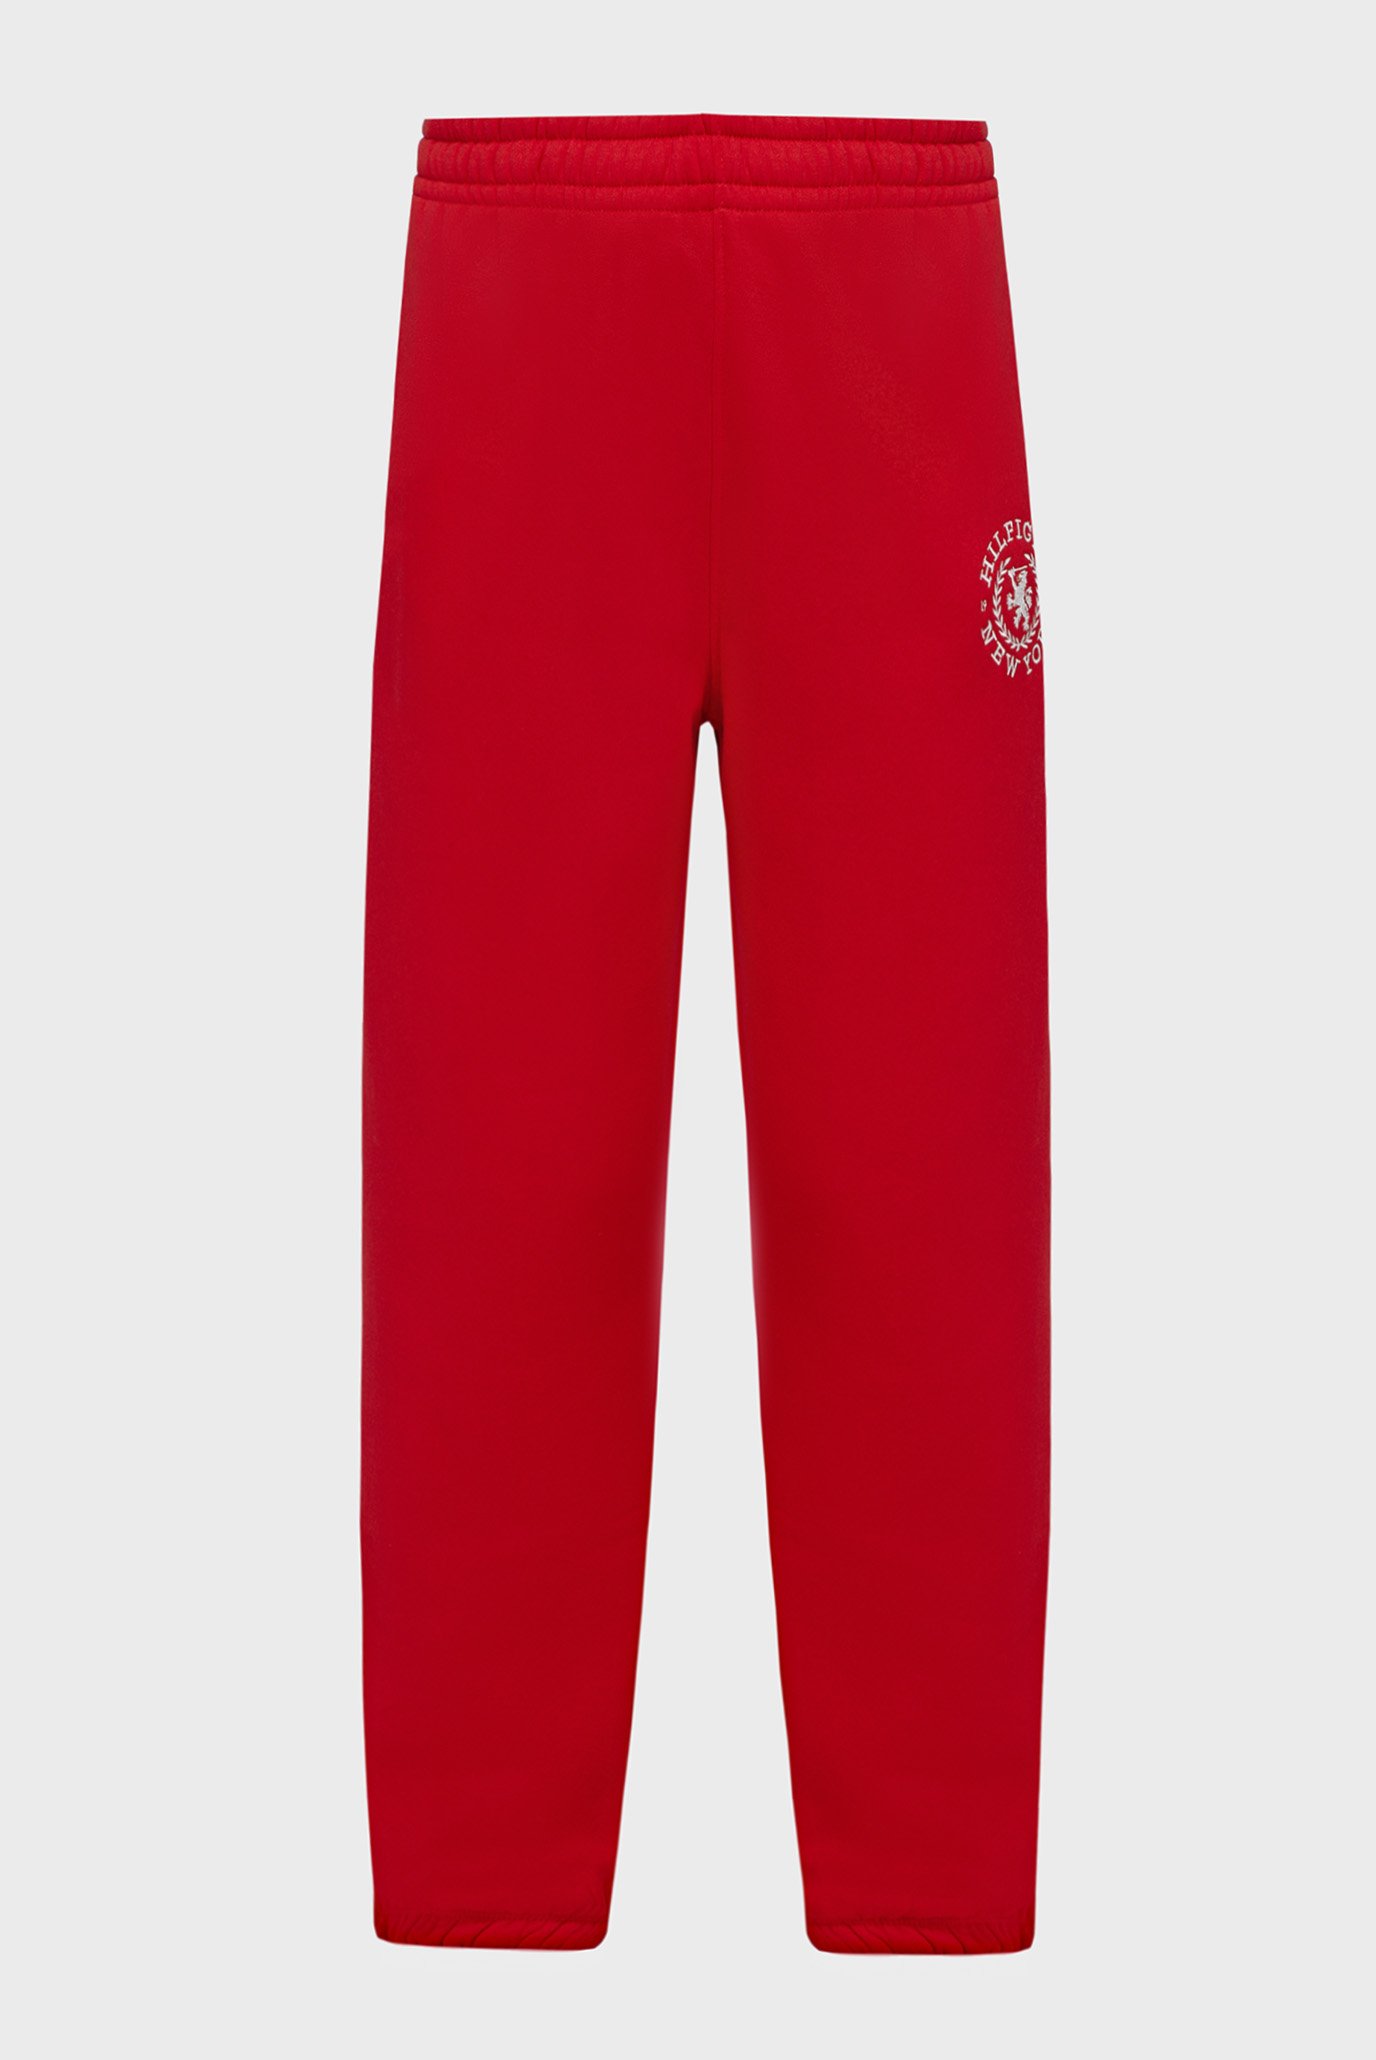 Жіночі червоні спортивні штани CREST SWEAT PANT 1